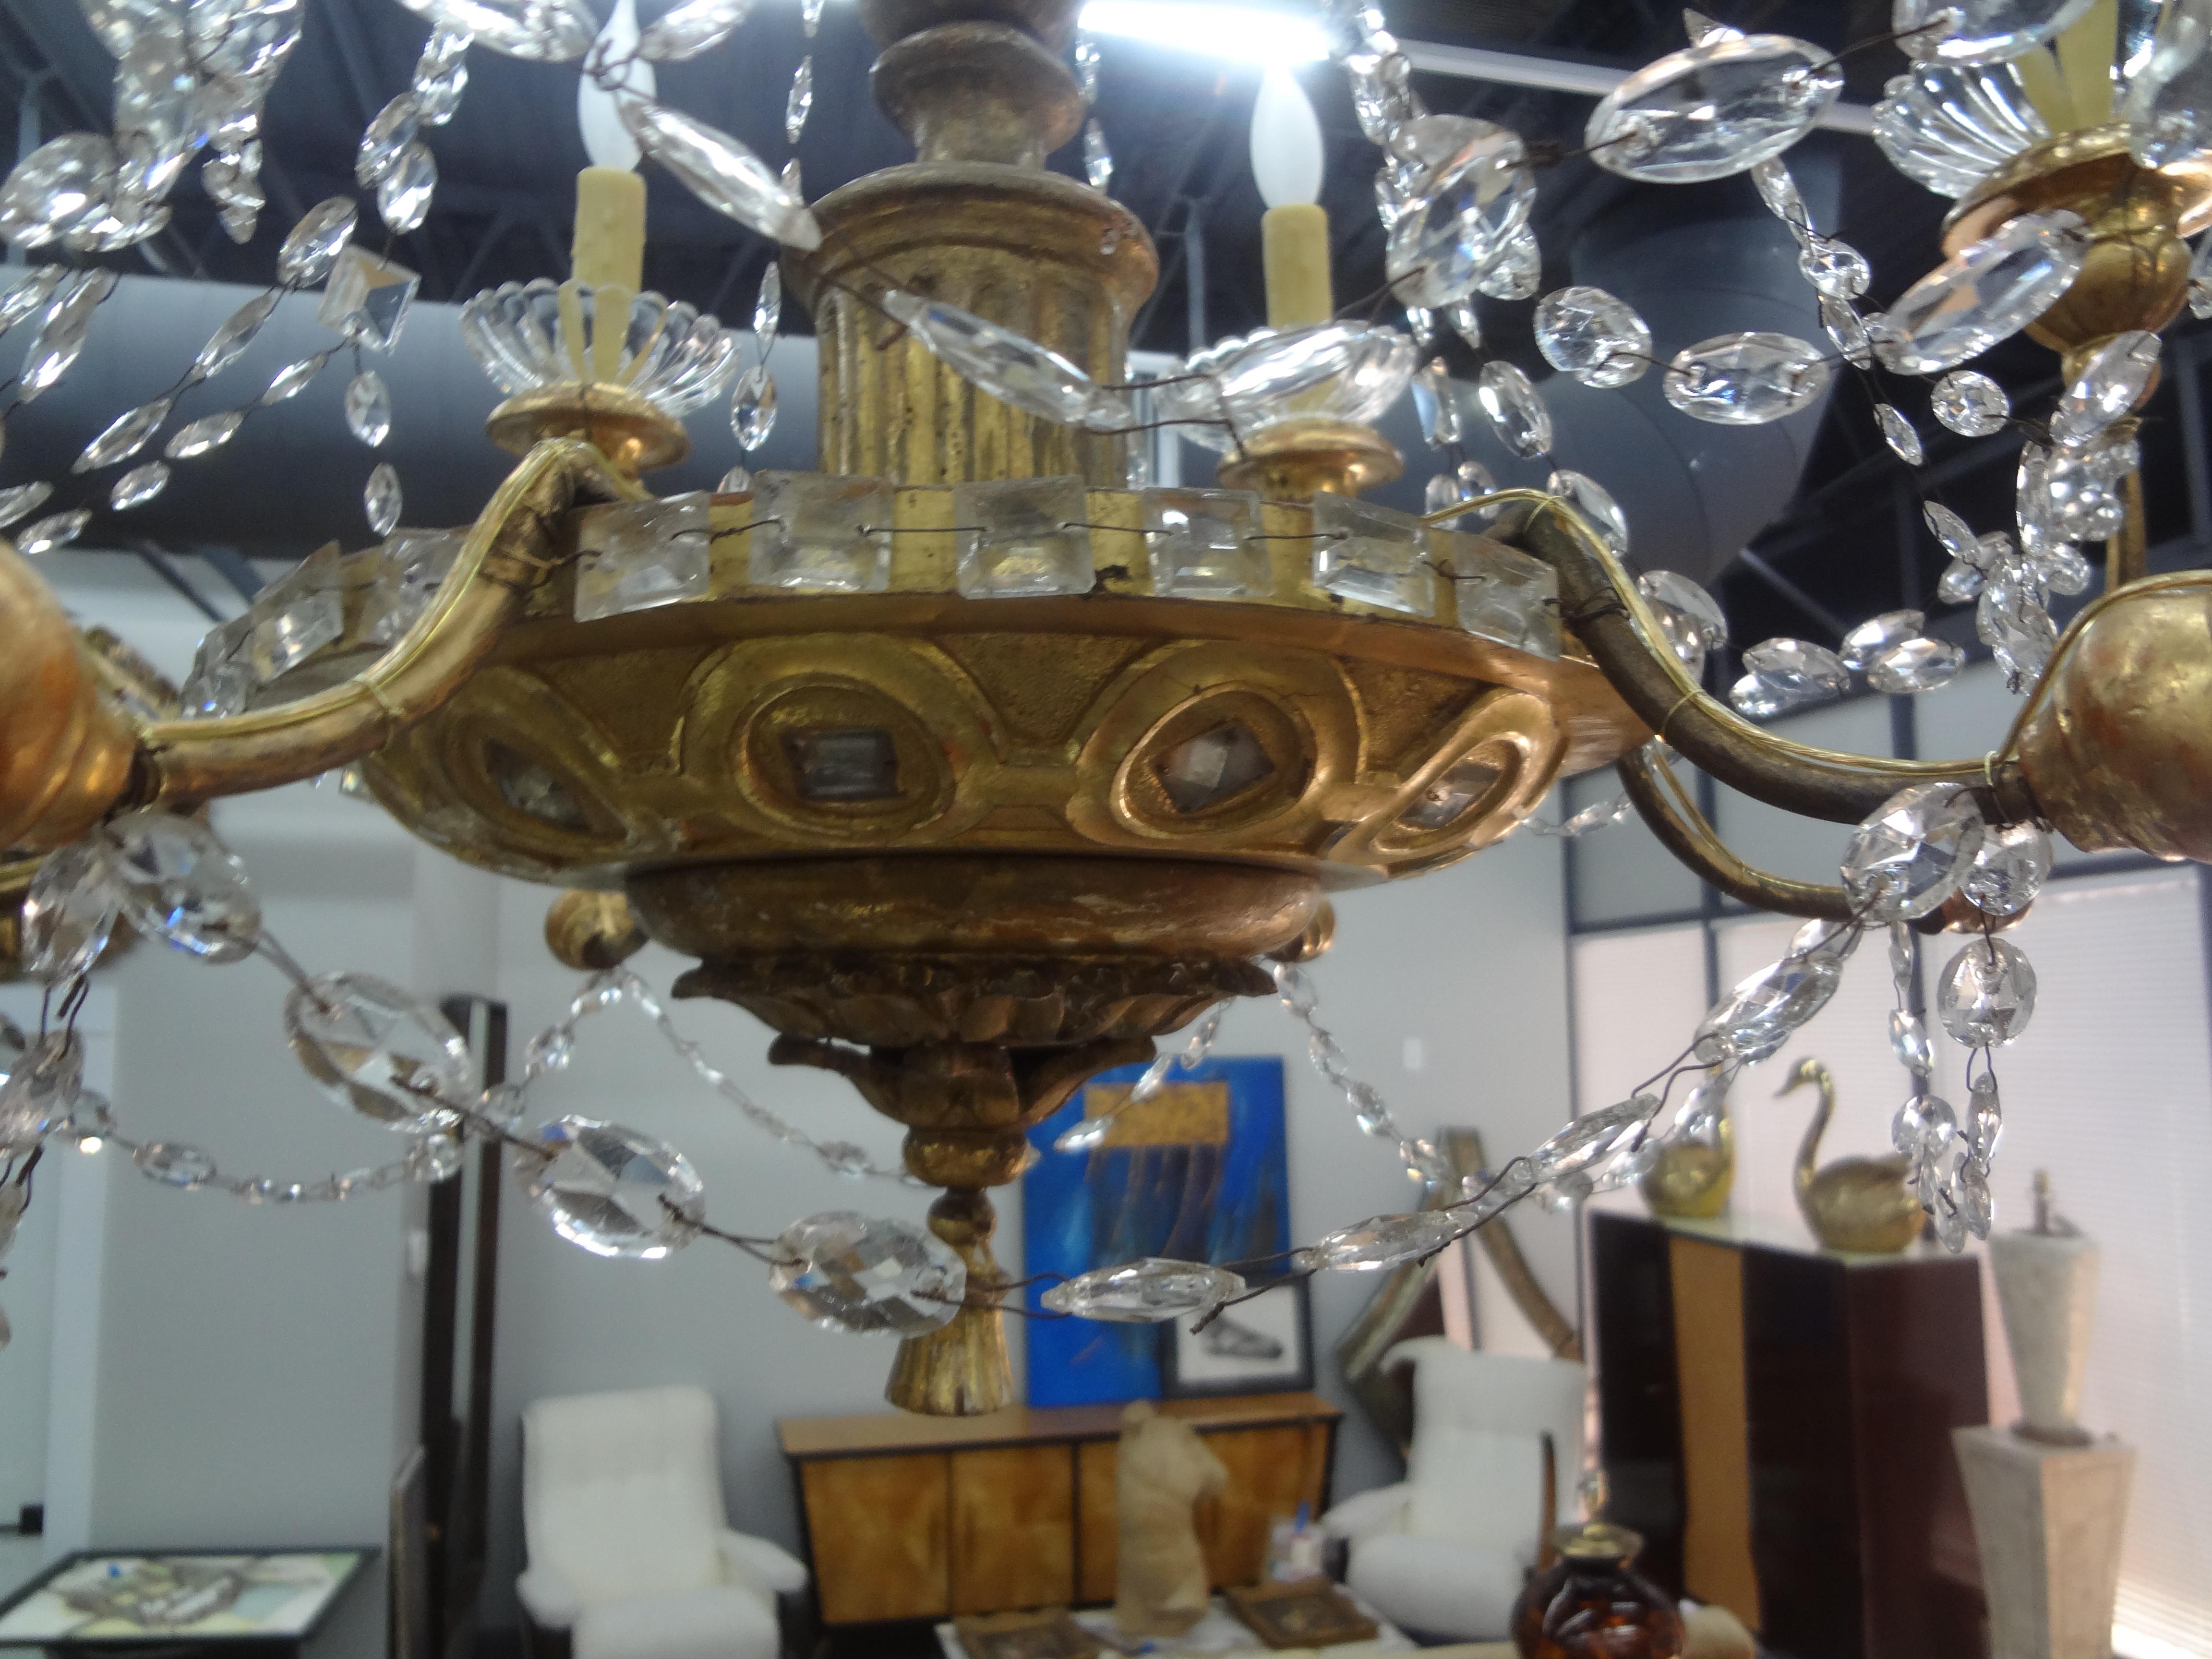 Lustre génois en bois doré et cristal du 19e siècle.
Ce remarquable lustre italien Genovese en bois doré et cristal à six lumières présente des détails miroirs très inhabituels avec des prismes rectangulaires.
Ce magnifique lustre baroque italien